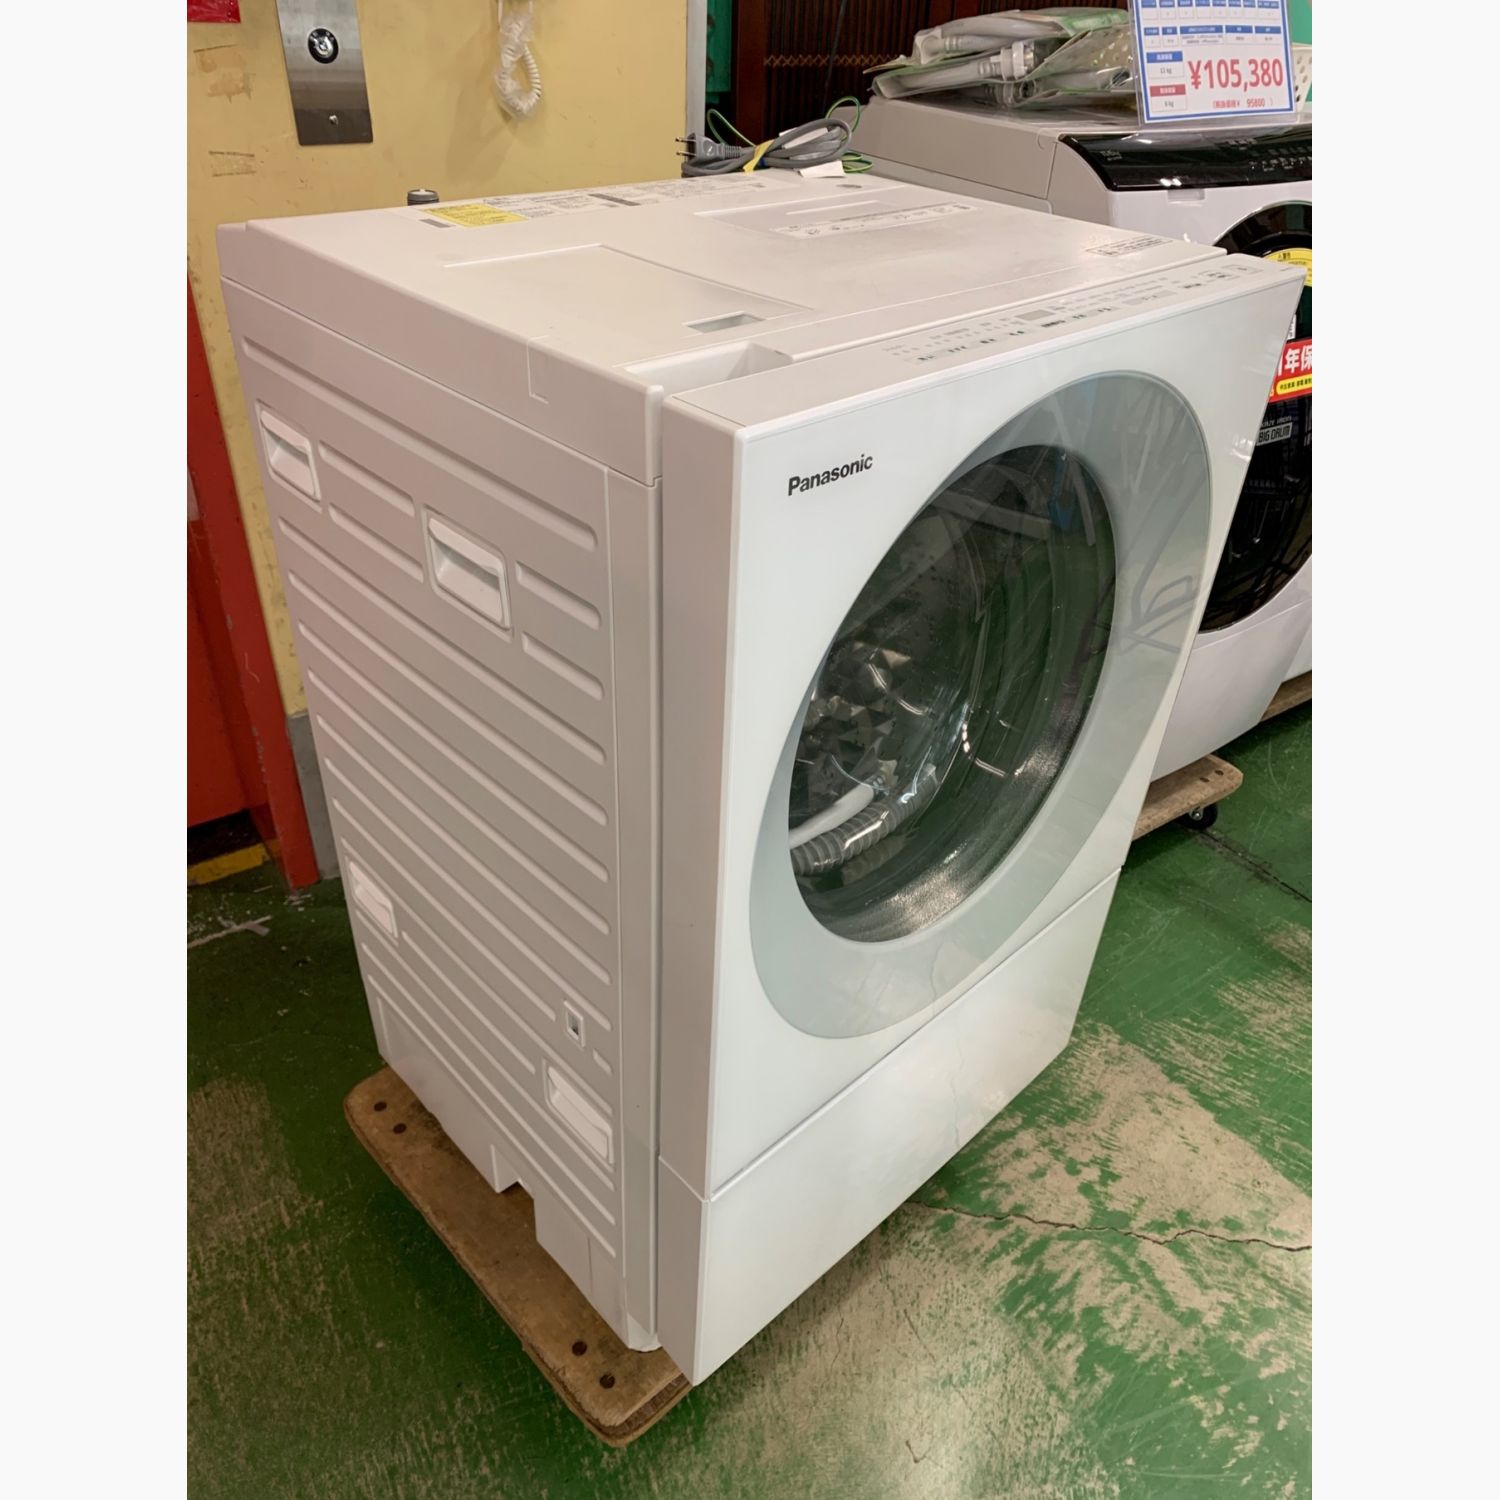 Panasonic (パナソニック) ドラム式洗濯乾燥機 輸送用ボルト有 7.0kg 